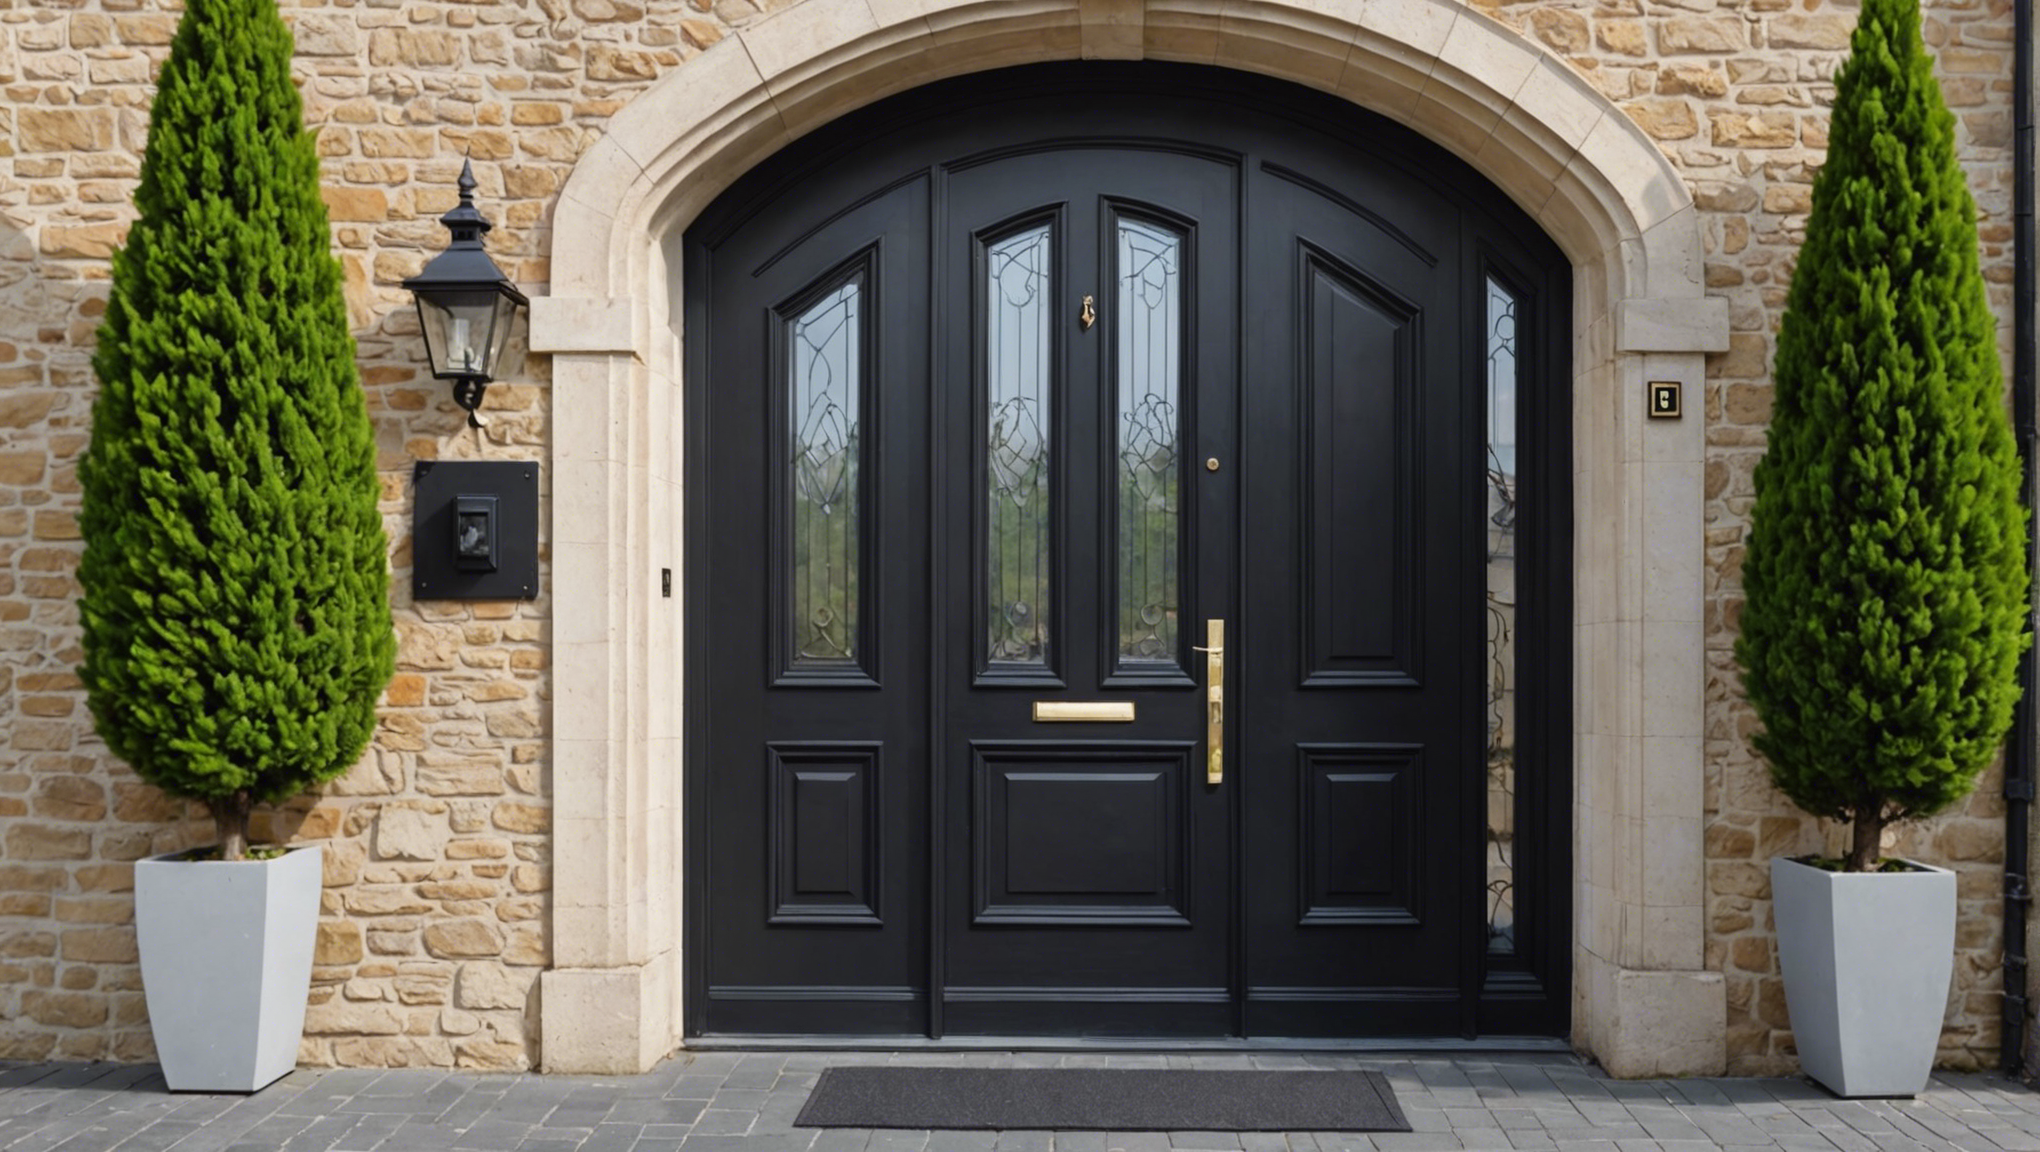 découvrez nos conseils pour choisir la meilleure porte d'entrée pour votre maison et améliorer son esthétique, sa sécurité et son isolation.